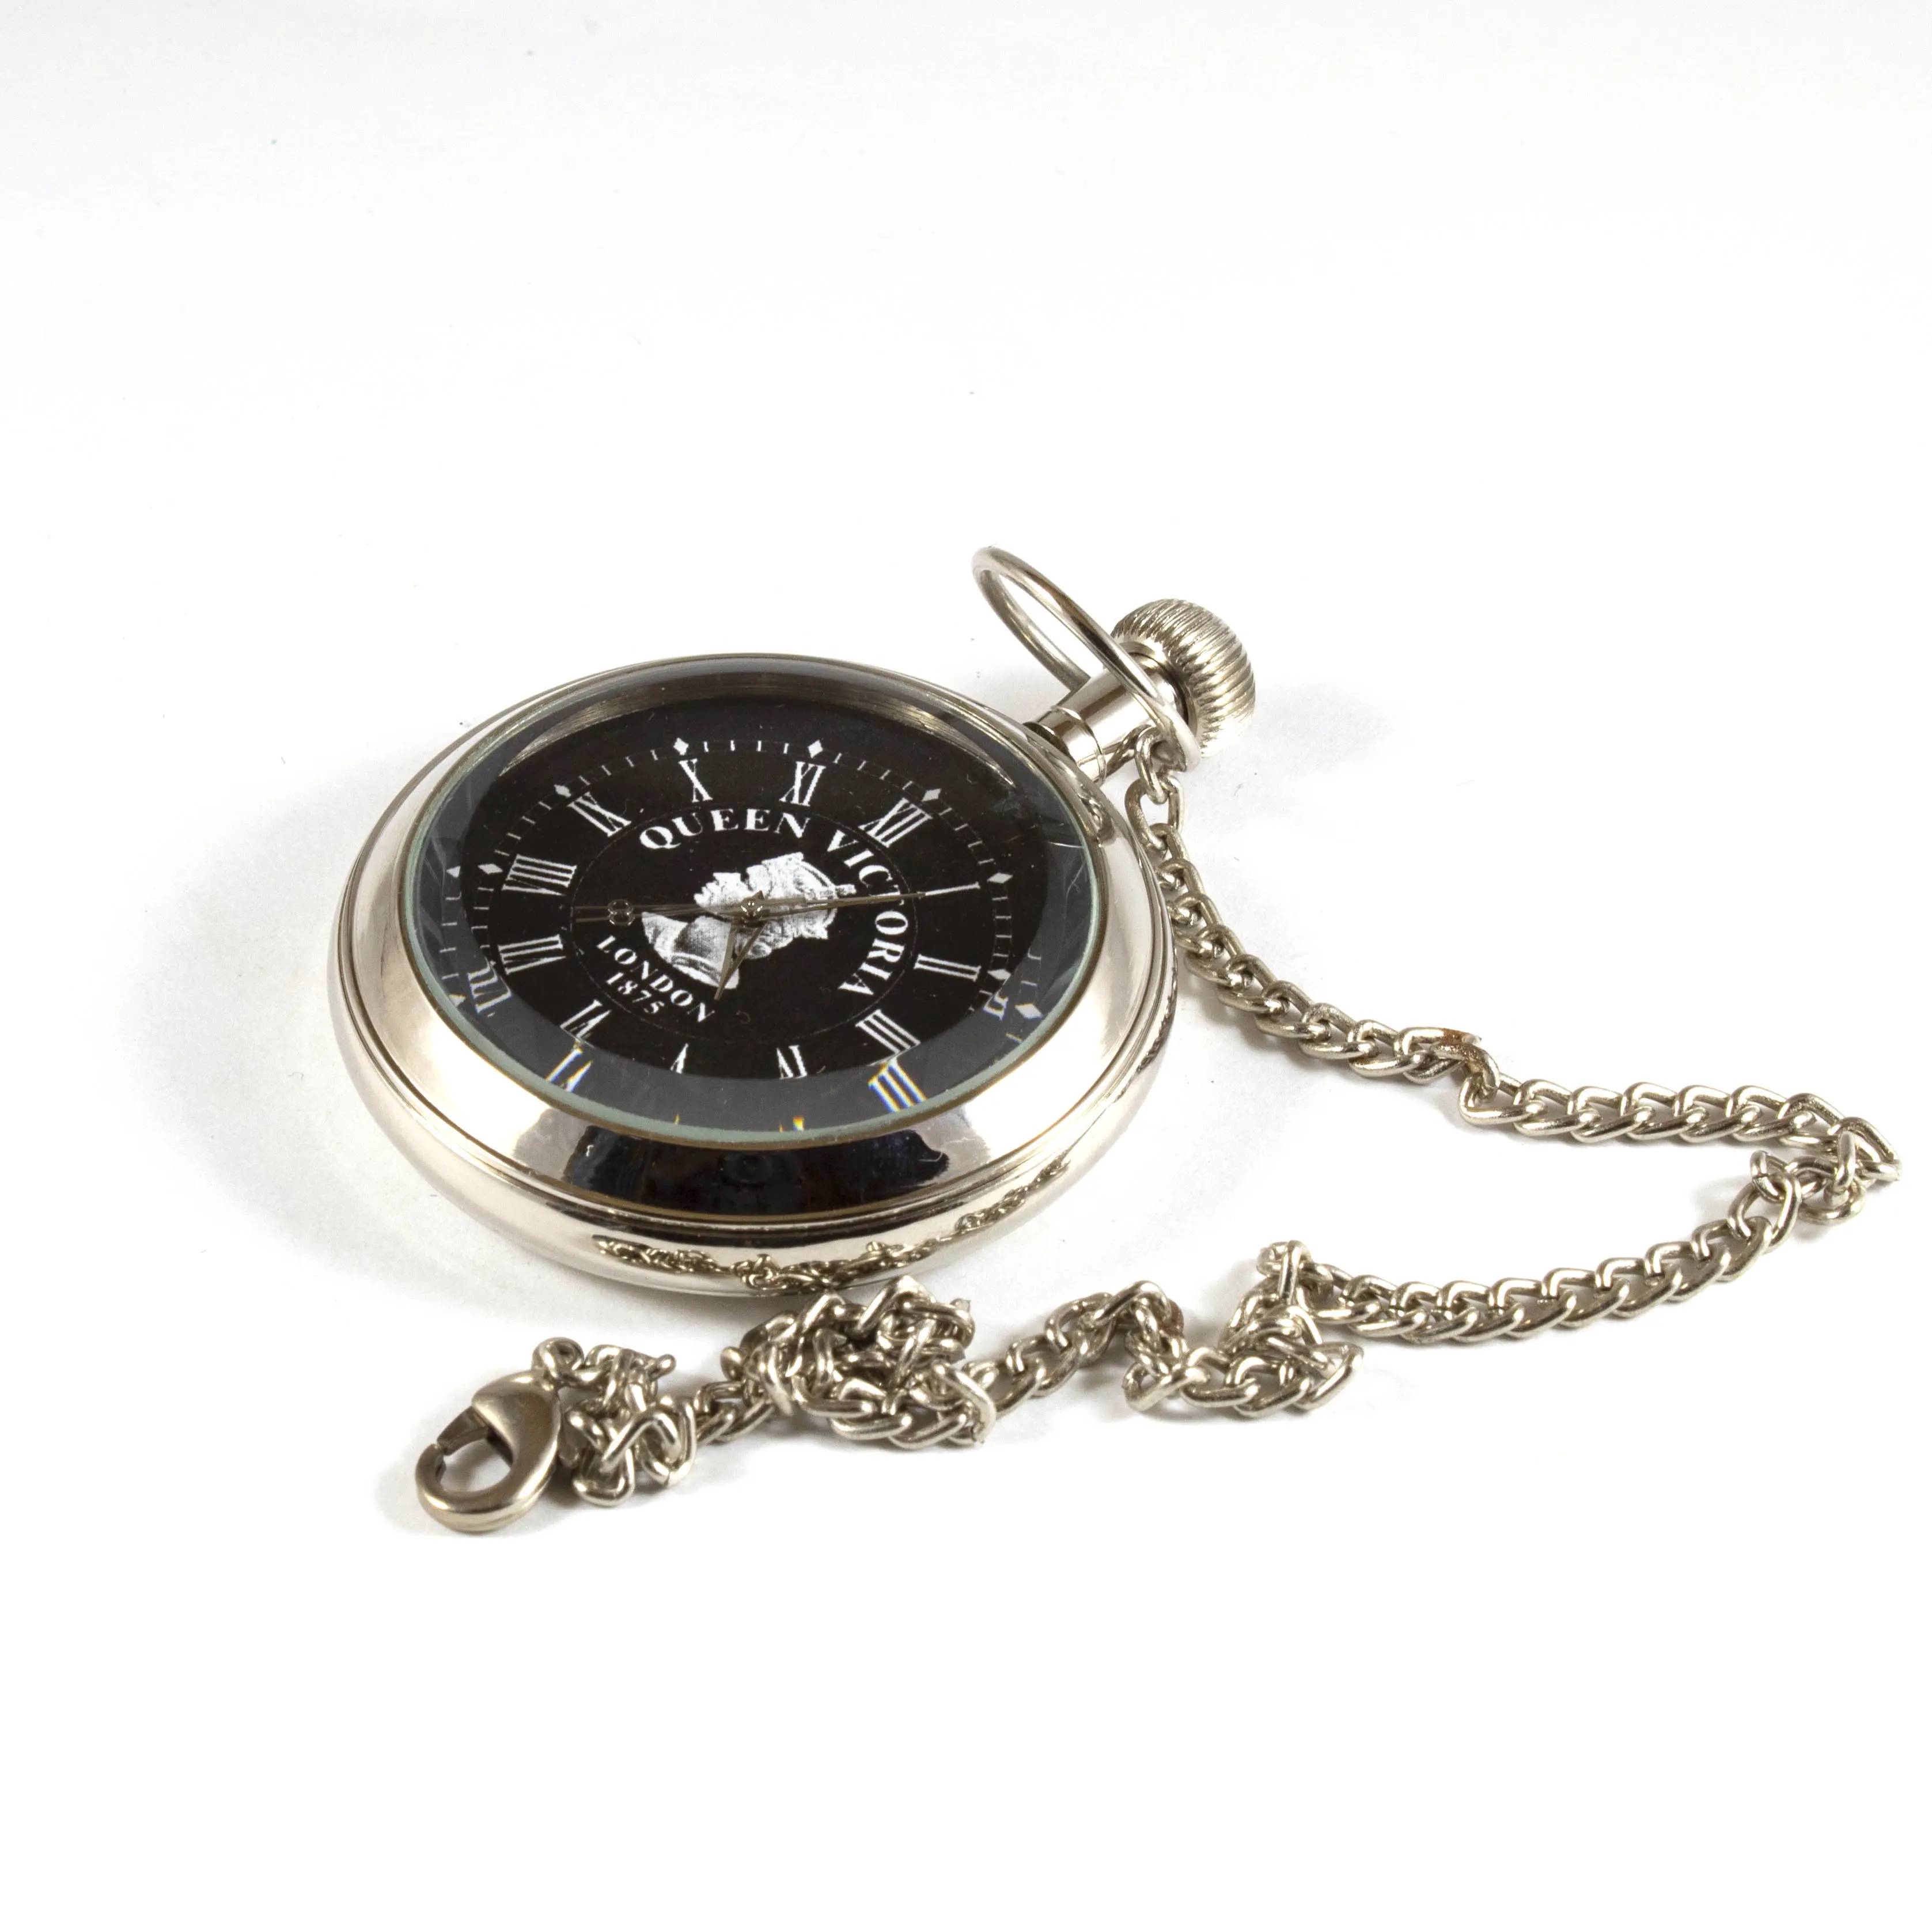 นาฬิกาพกทองเหลือง นาฬิกาควอทซ์เก่า โซ่นาฬิกา กลไกที่กําหนดเอง กล่องเงินโบราณ วินเทจแกะสลักด้วยกล่องไม้ดีไซน์